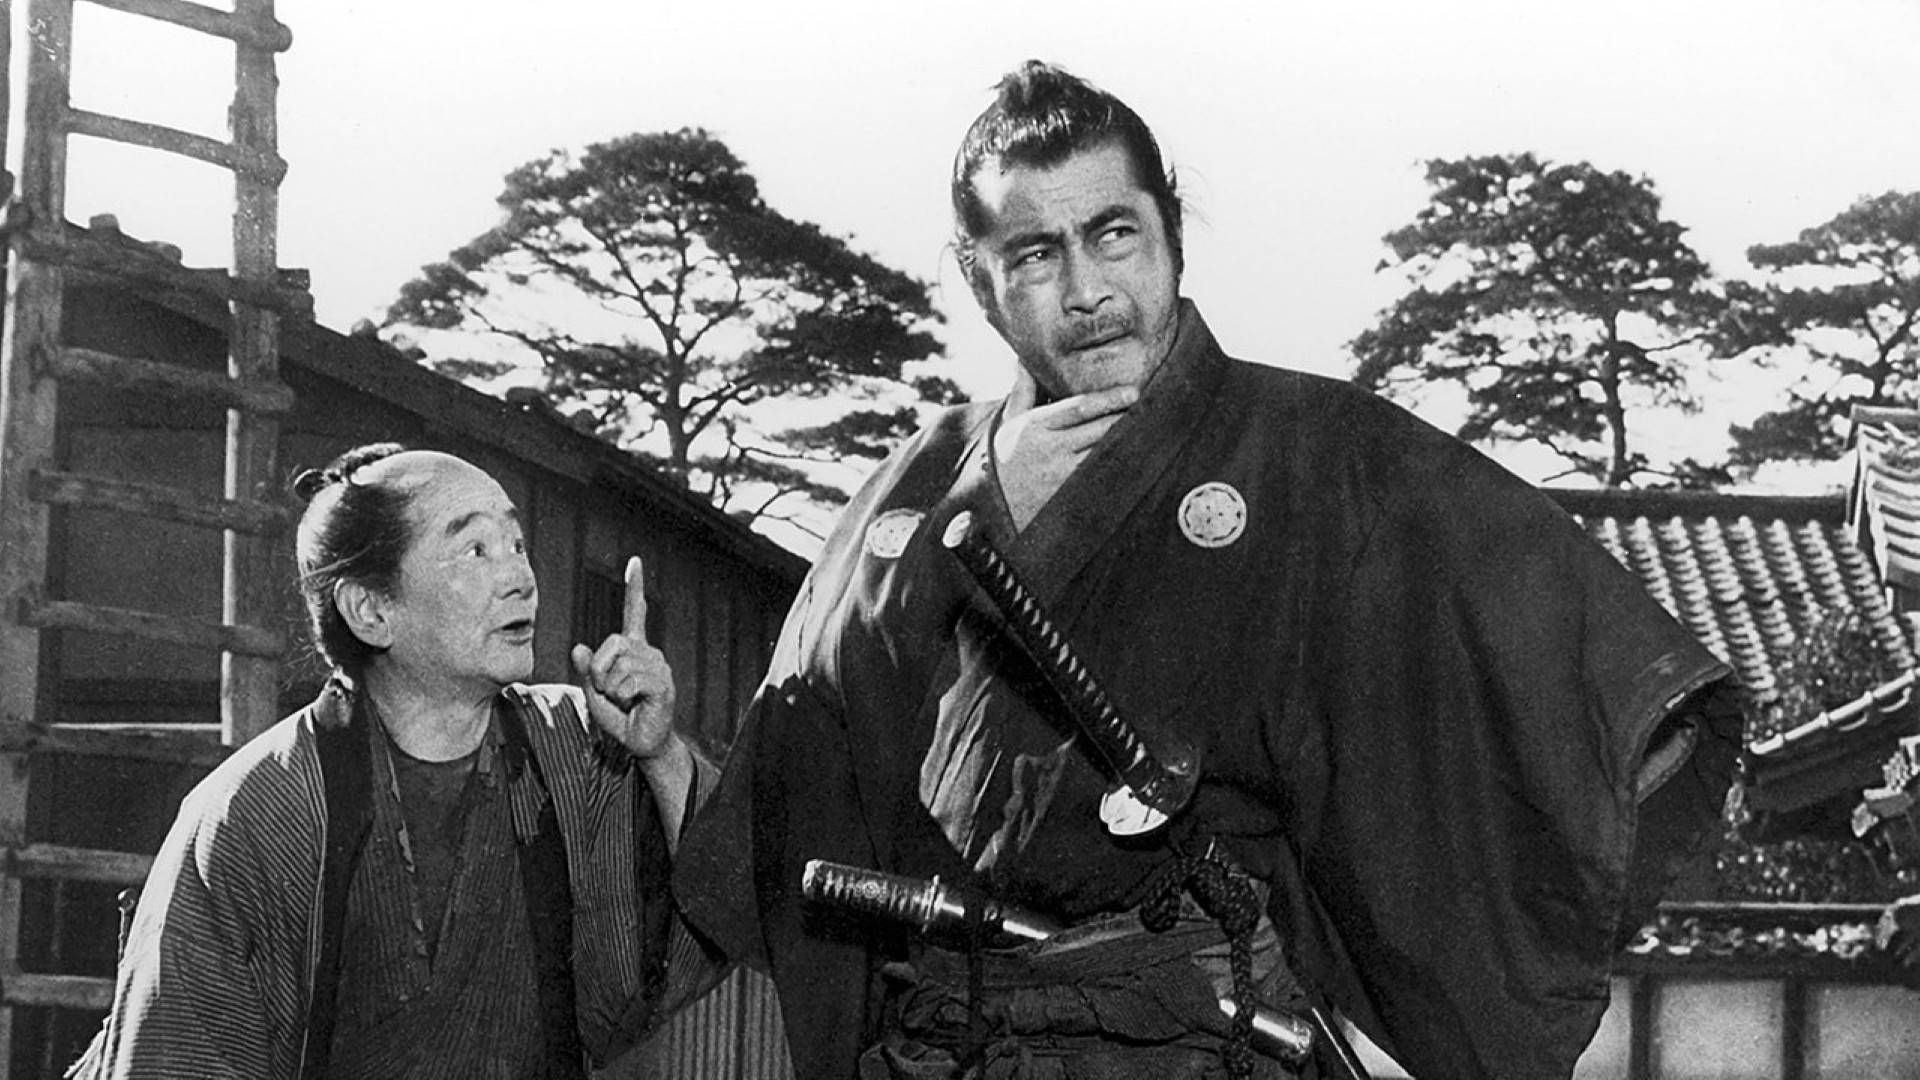 Цитата из к/ф «Телохранитель». реж. Акира Куросава. 1961. Япония